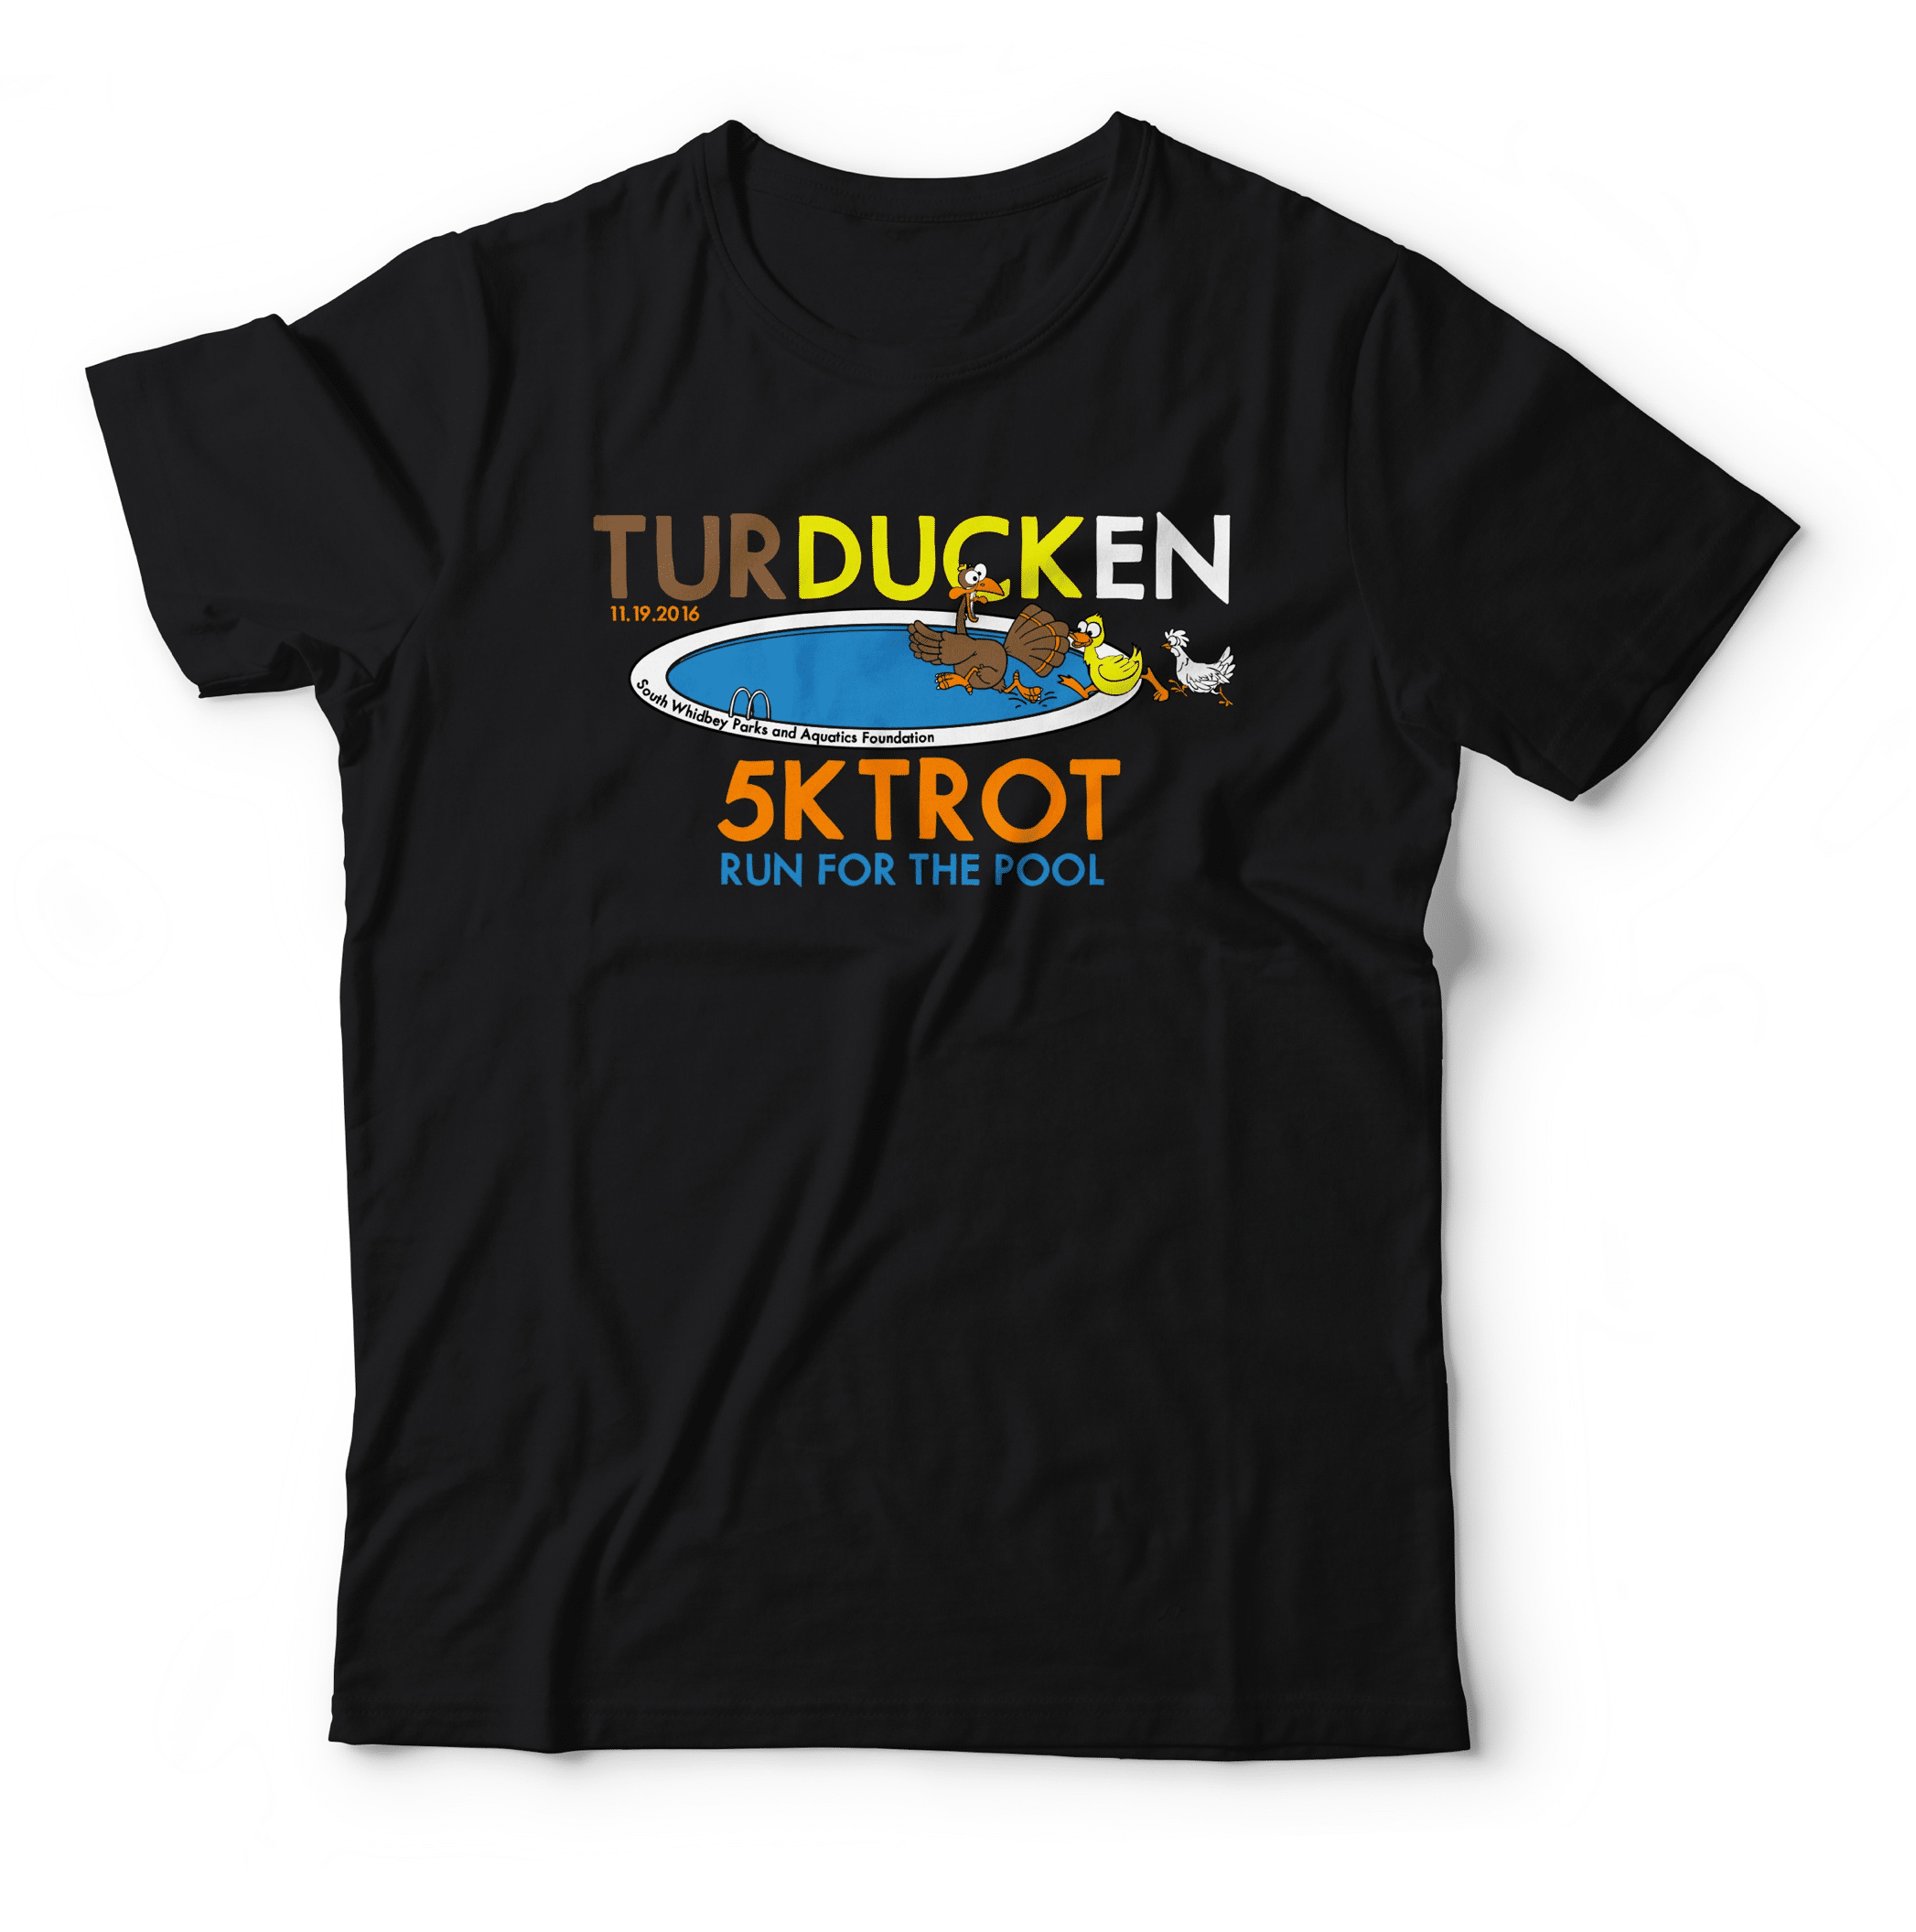 turducken-5k-trot-tshirt